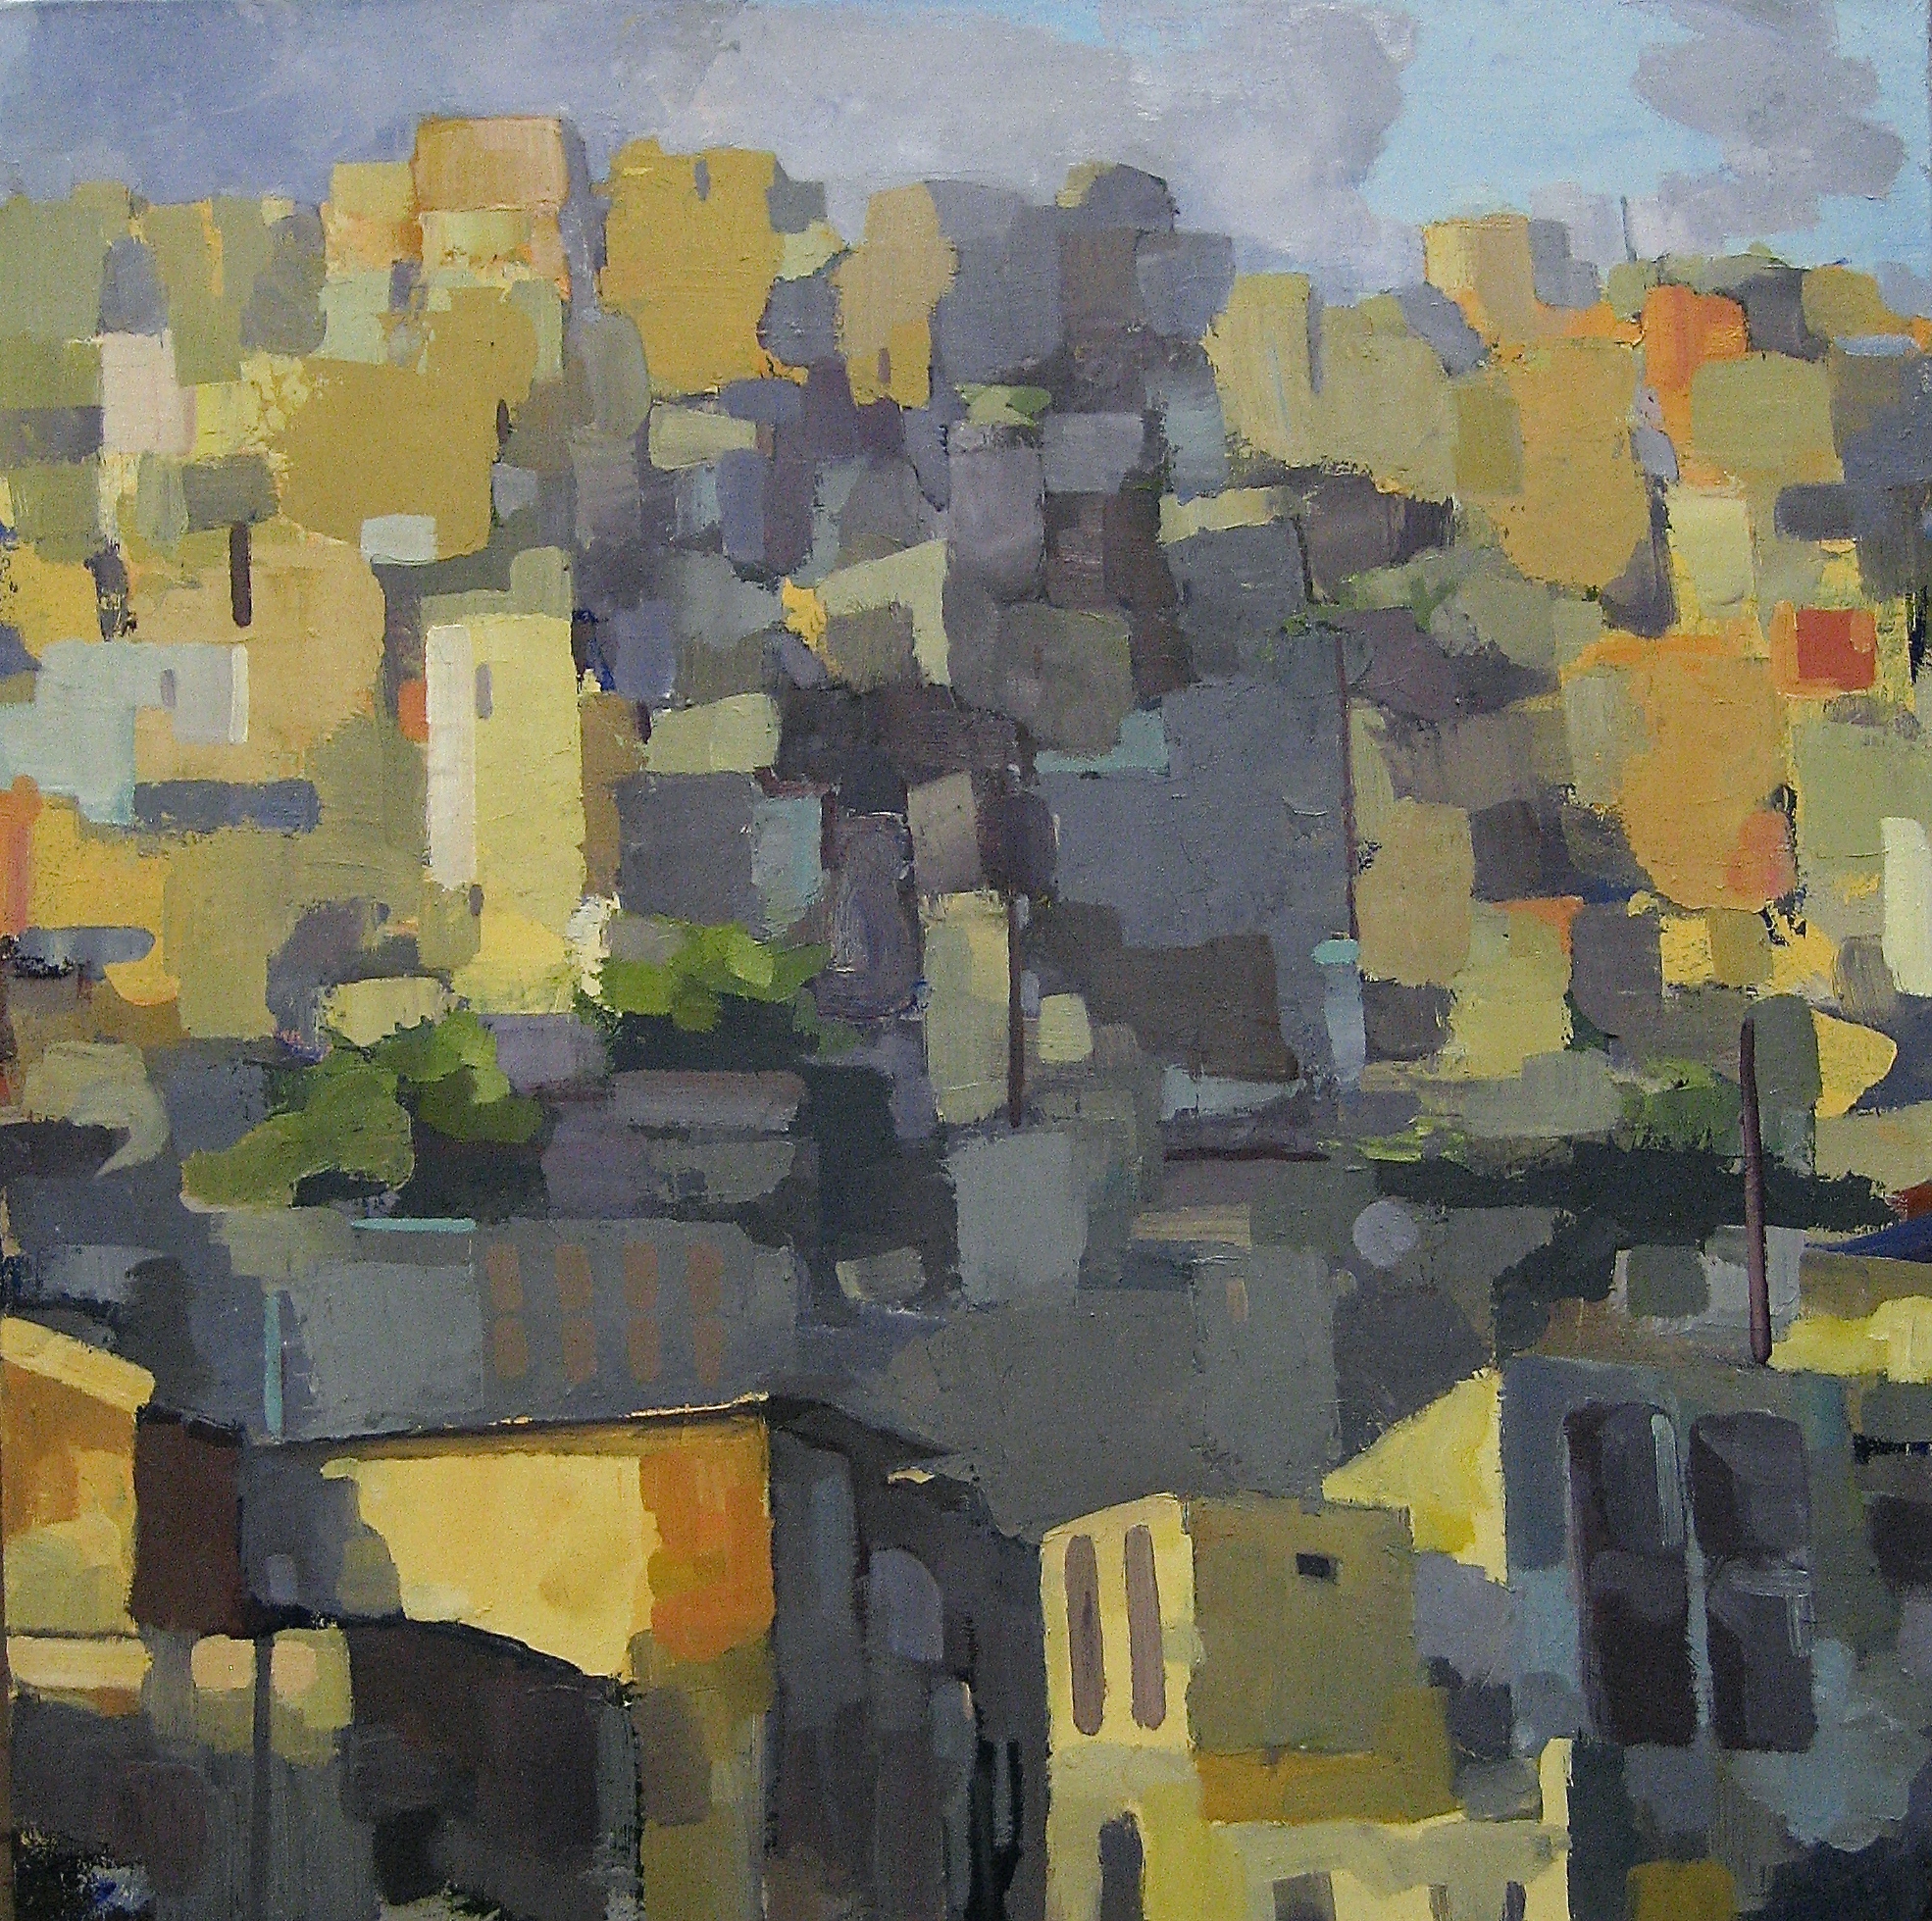 Ridgeline, Oil on Canvas, 28" x 28"